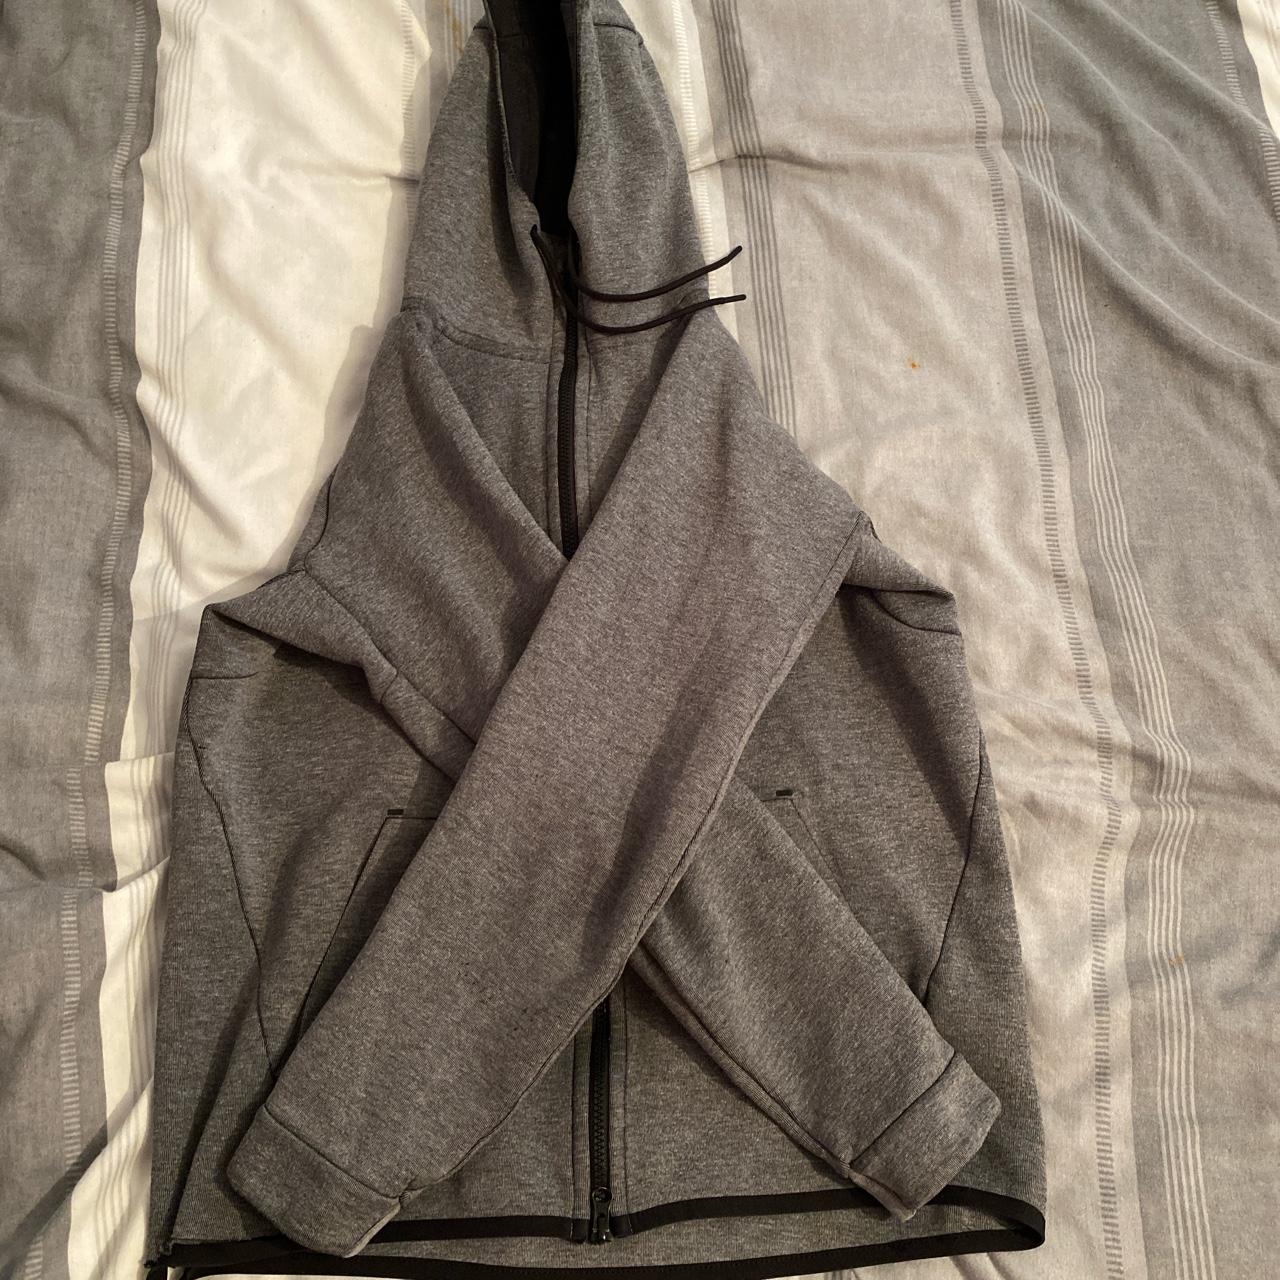 Nike Tech Fleece tracksuit Jogggers size S hoodie... - Depop